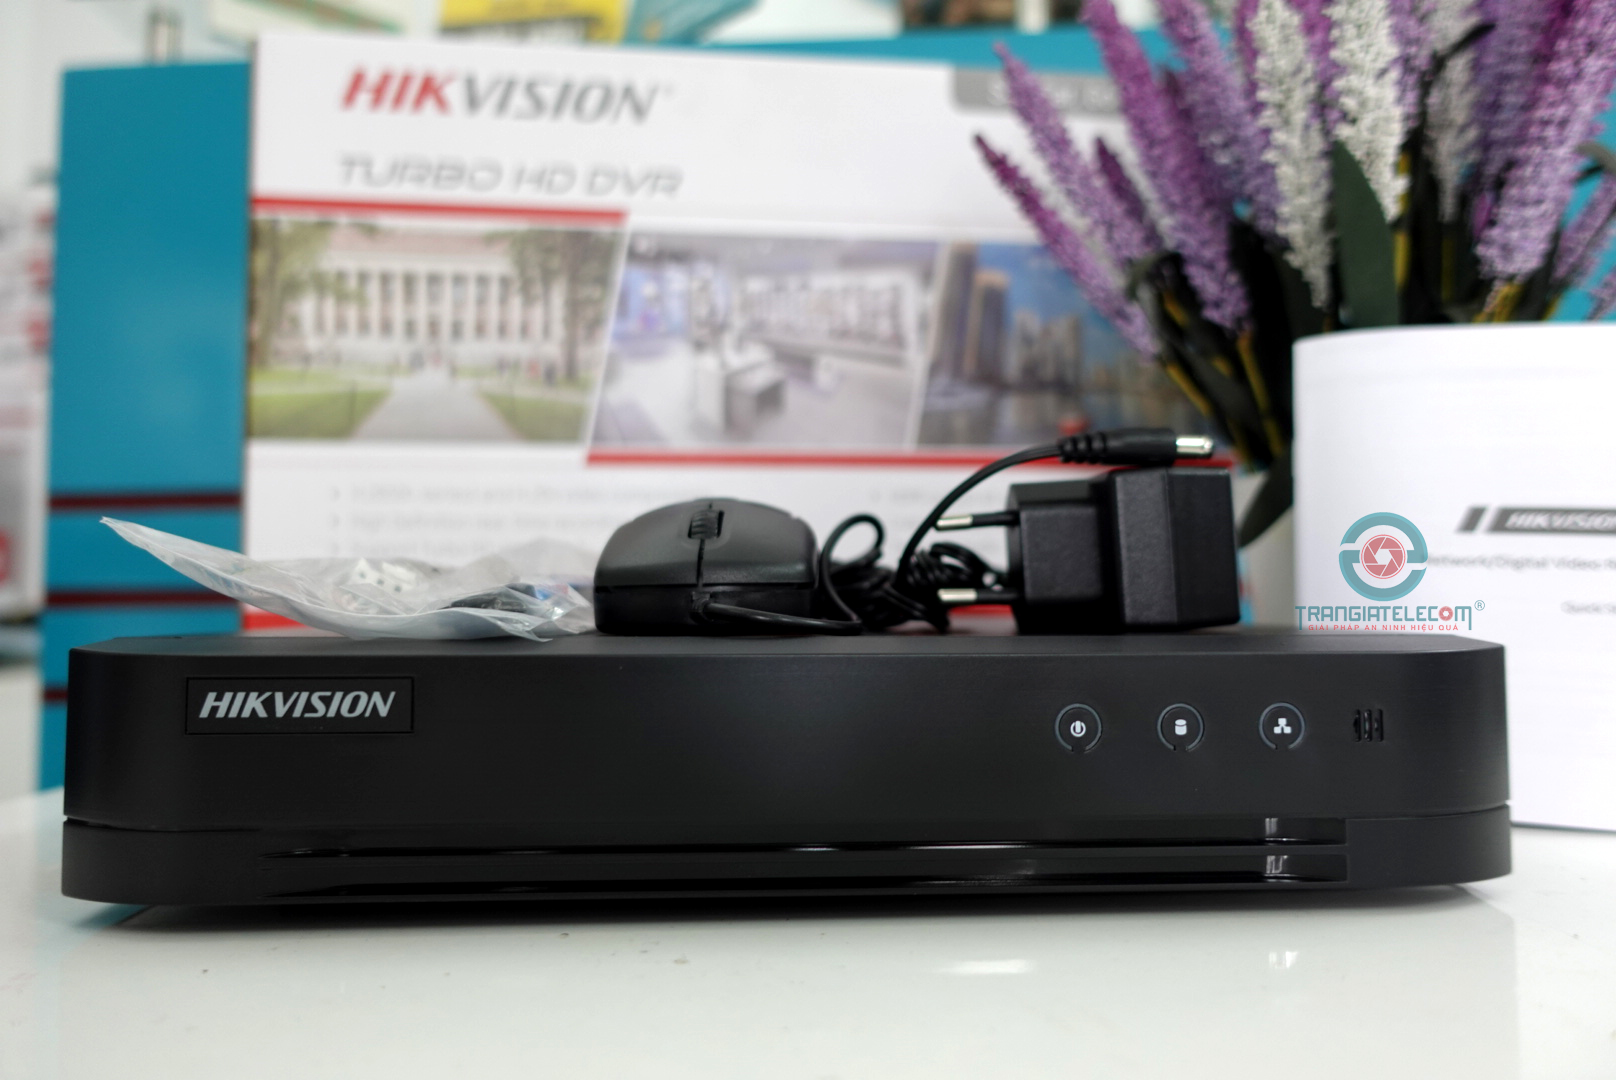 Đầu ghi hình 08 kênh HIKVISION DS-7208HGHI-K1 Turbo HD 3.0 vỏ sắt - TRANGIATELECOM